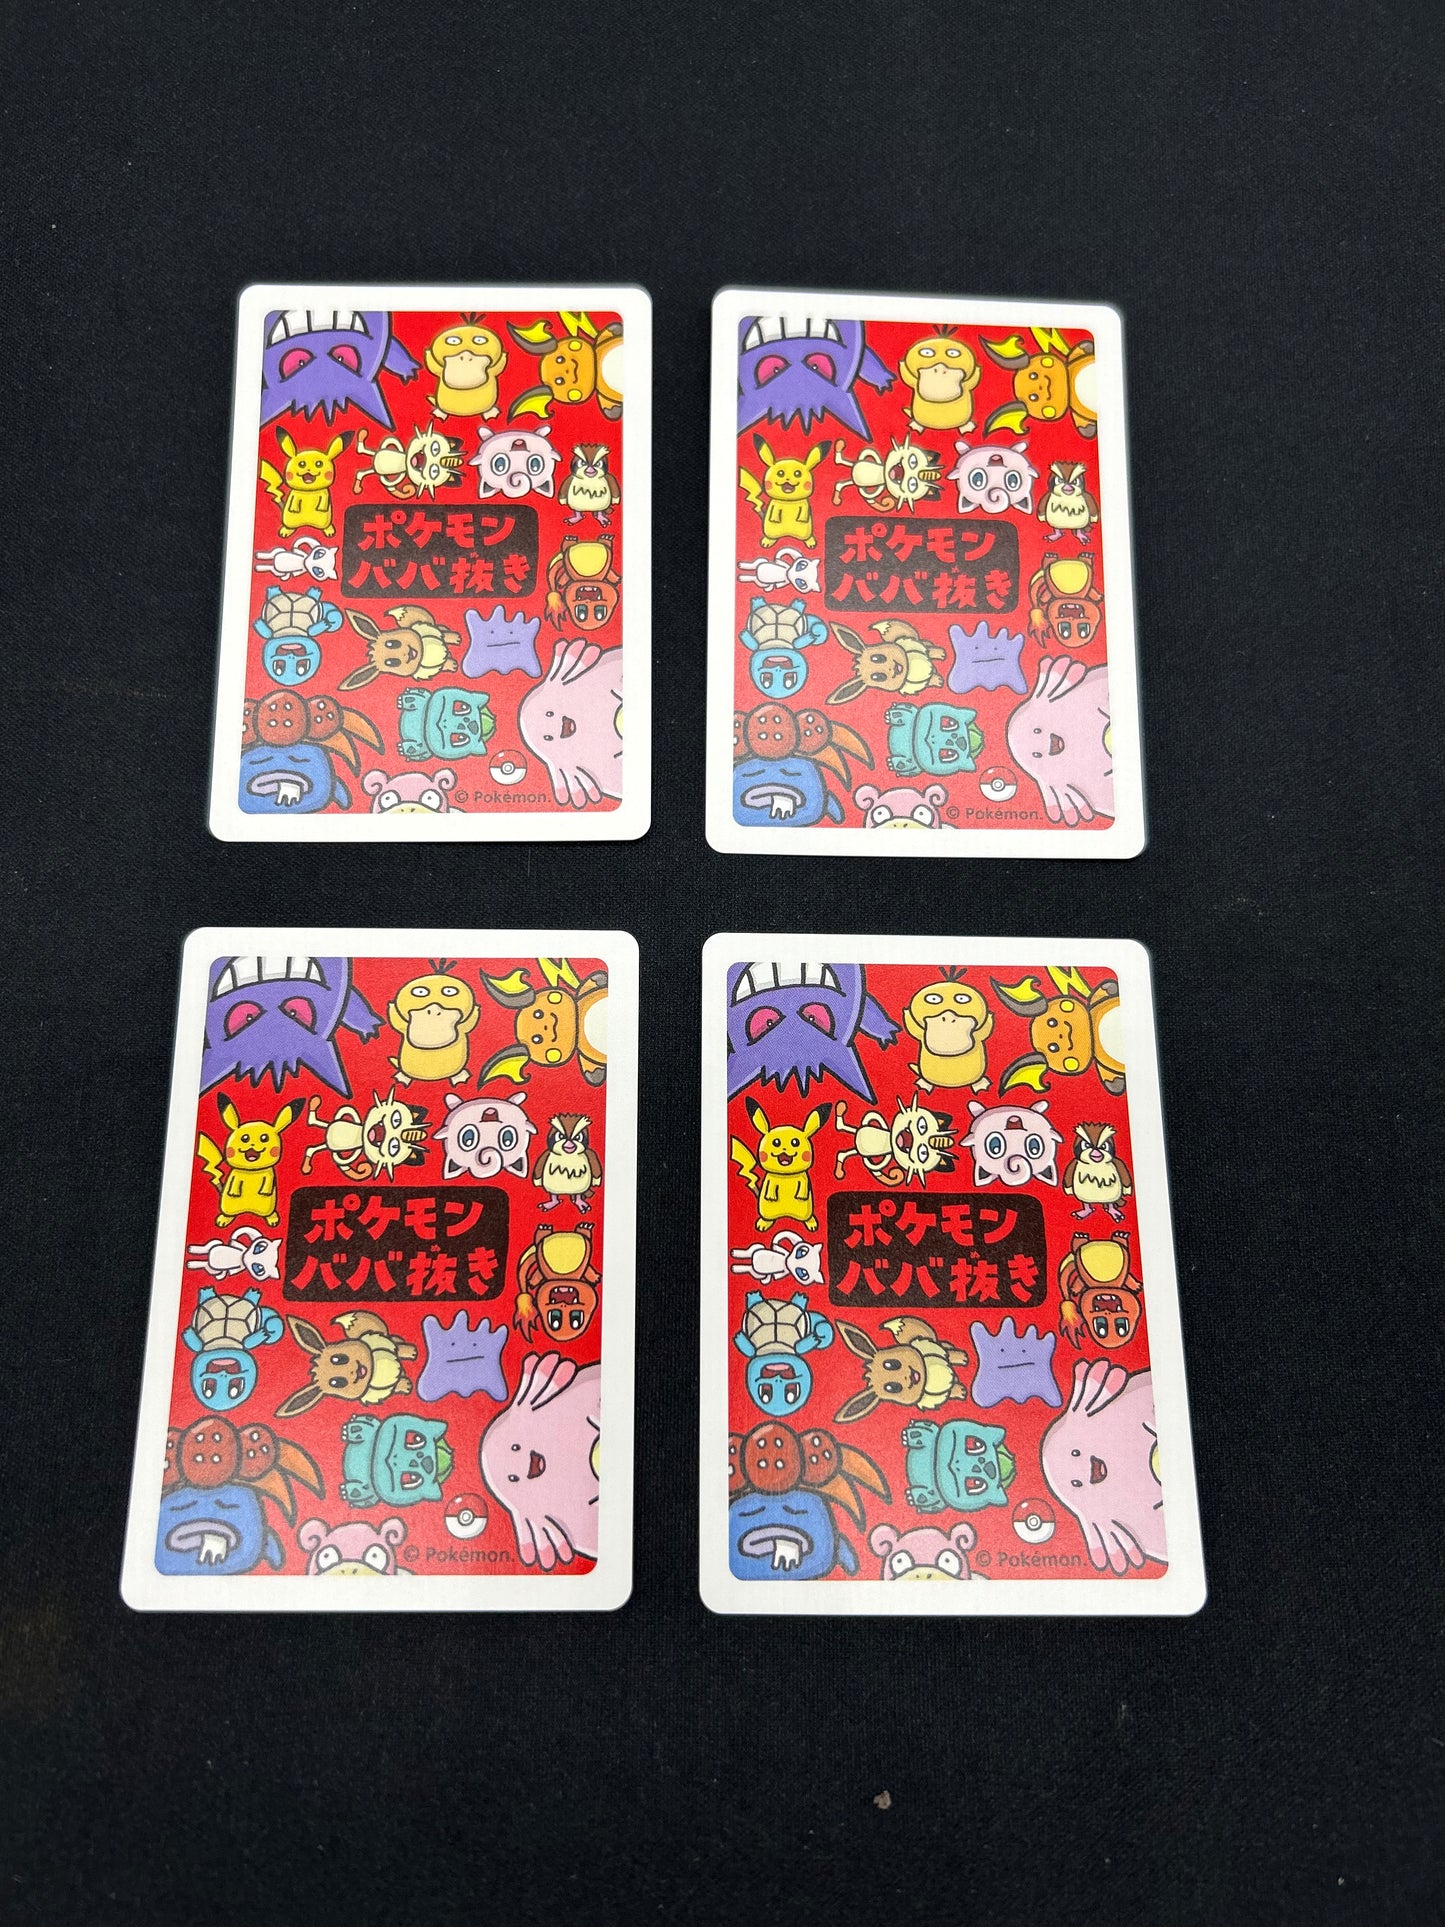 Japanese Pokémon card auction 1